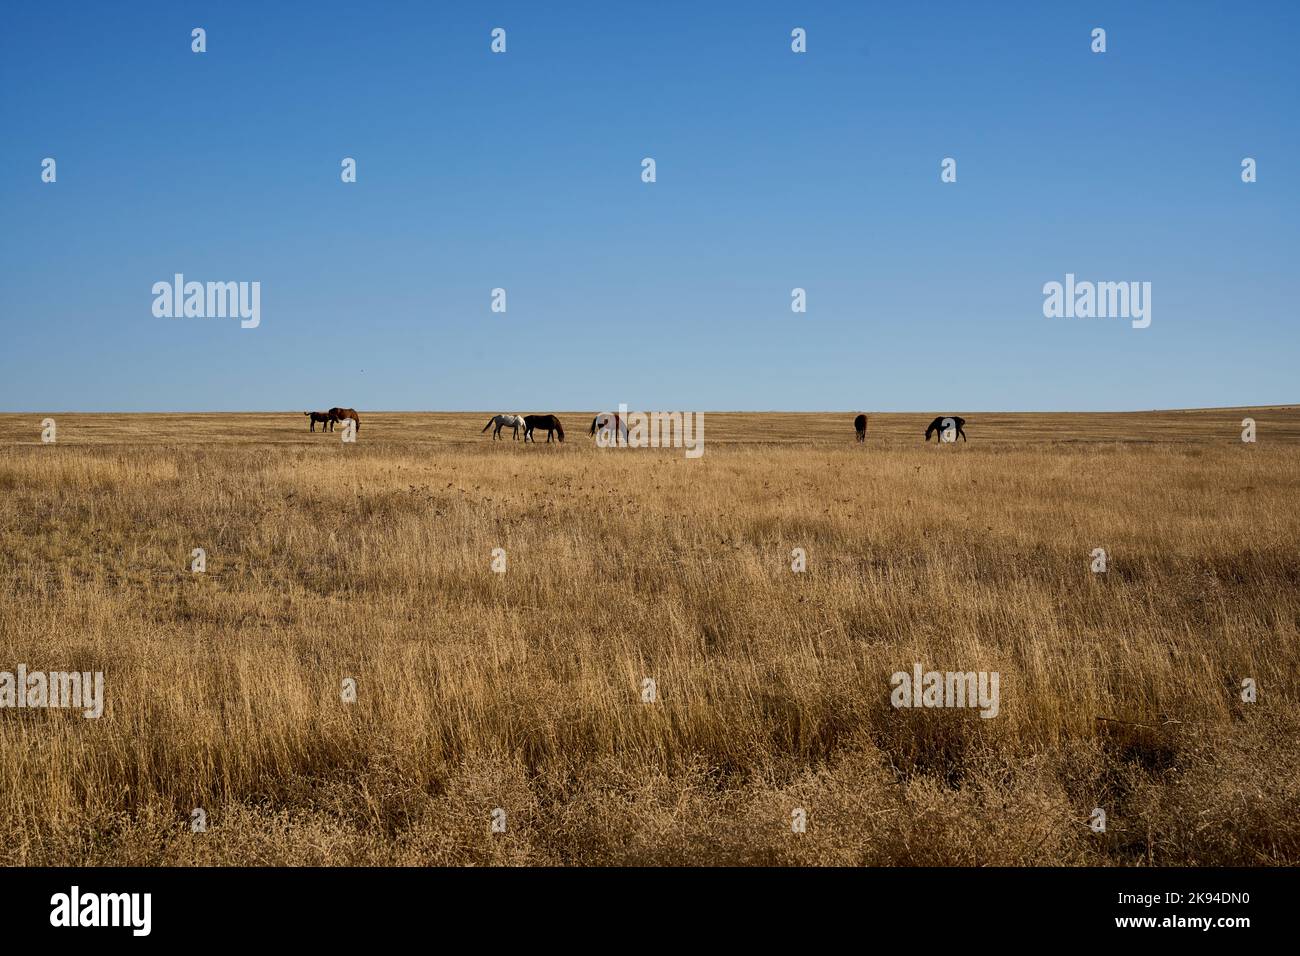 Pferde weiden in trockener Savanne, Halbwüste, Steppenlandschaft Garedscha, Region Kachetien, Raion Sagaredscho, Südosten von Georgien Stock Photo